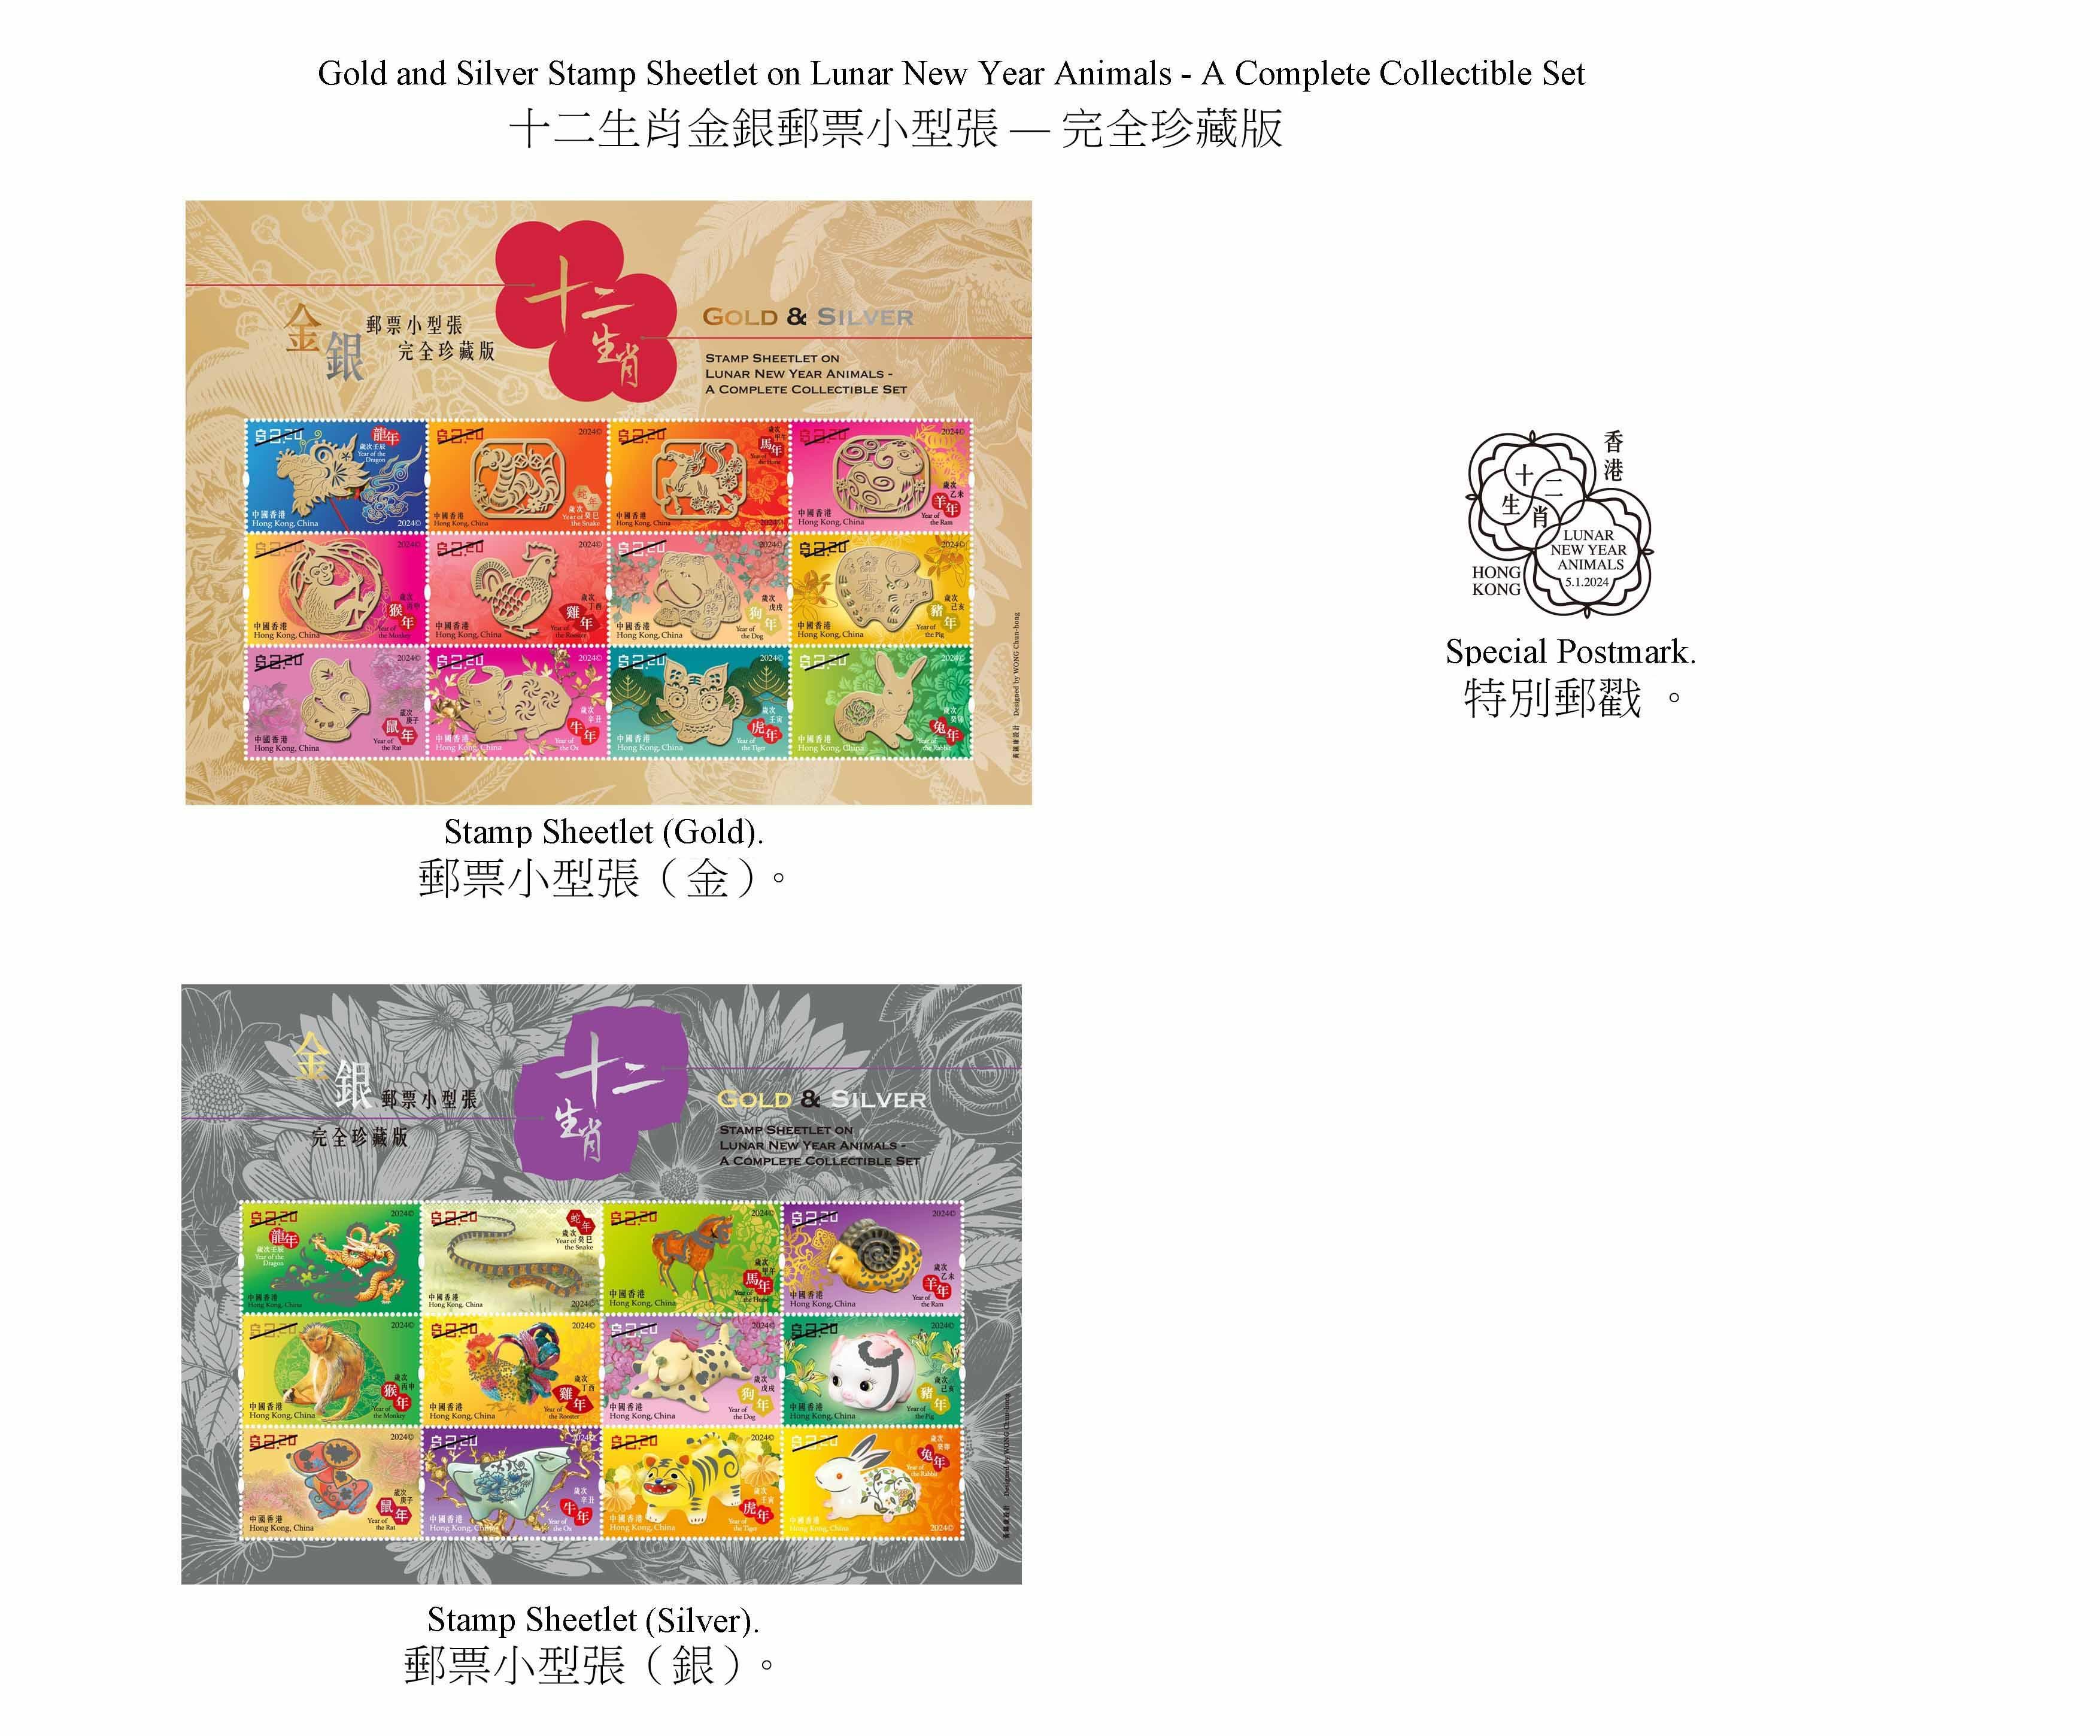 香港郵政二○二四年一月五日（星期五）發行以「歲次甲辰（龍年）」為題的特別郵票及相關集郵品，同日亦推出「十二生肖金銀郵票小型張──完全珍藏版」。圖示以「十二生肖金銀郵票小型張──完全珍藏版」為題的郵票小型張和特別郵戳。